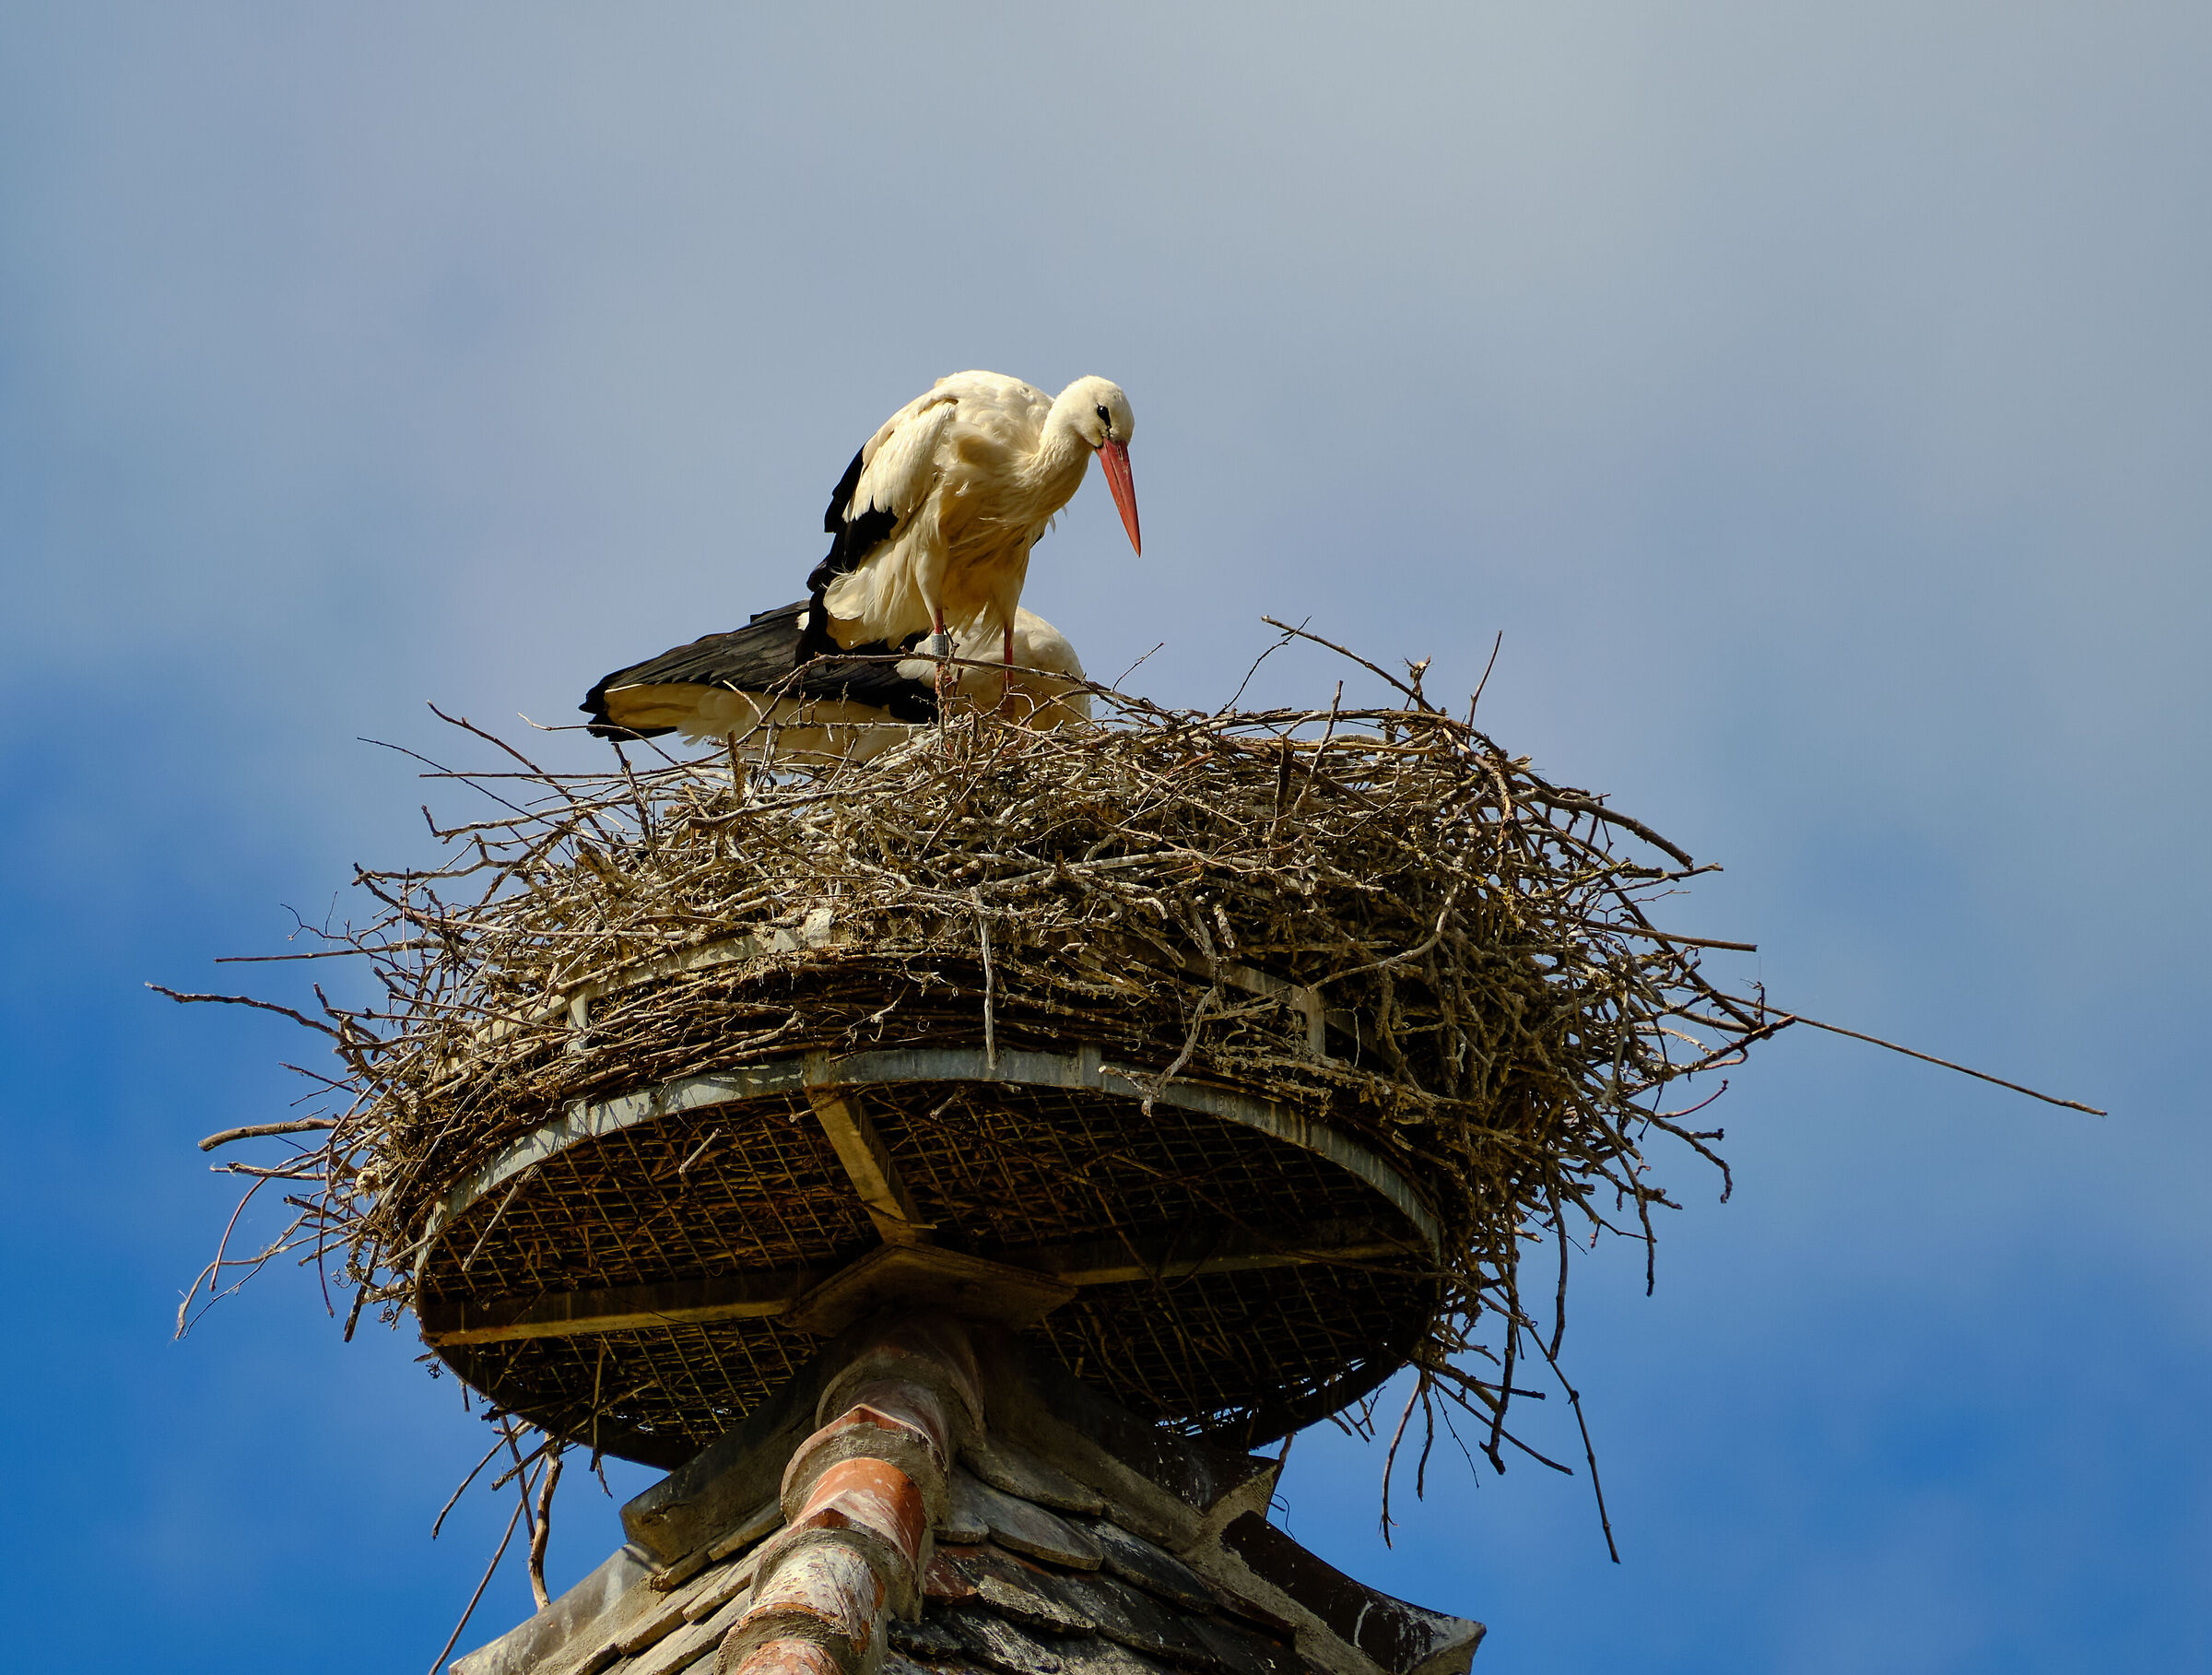 Kaysersberg storks...